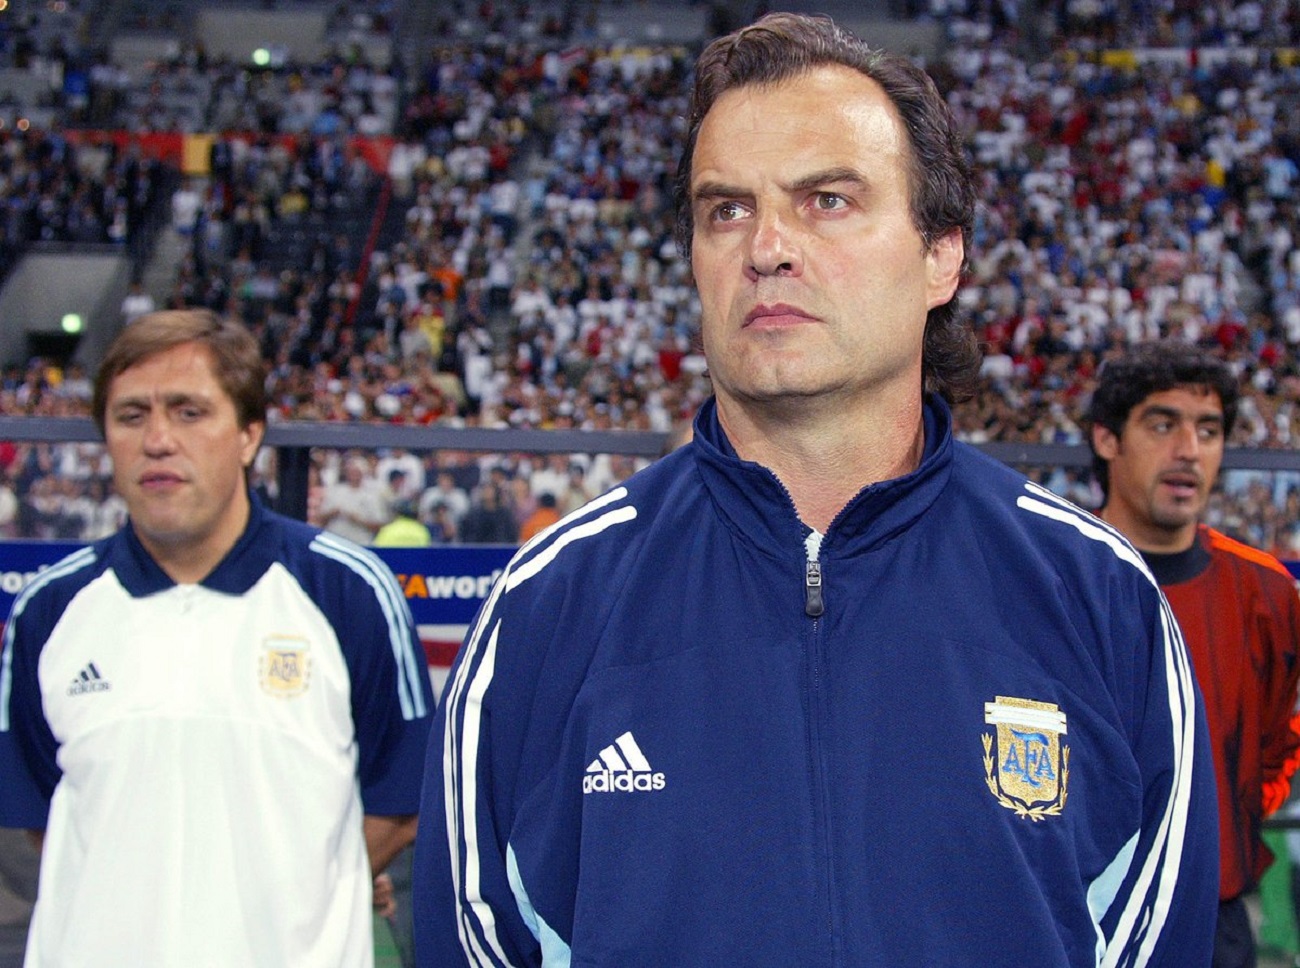 آرژانتین-تیم ملی آرژانتین-سرمربی آرژانتین-Argentina